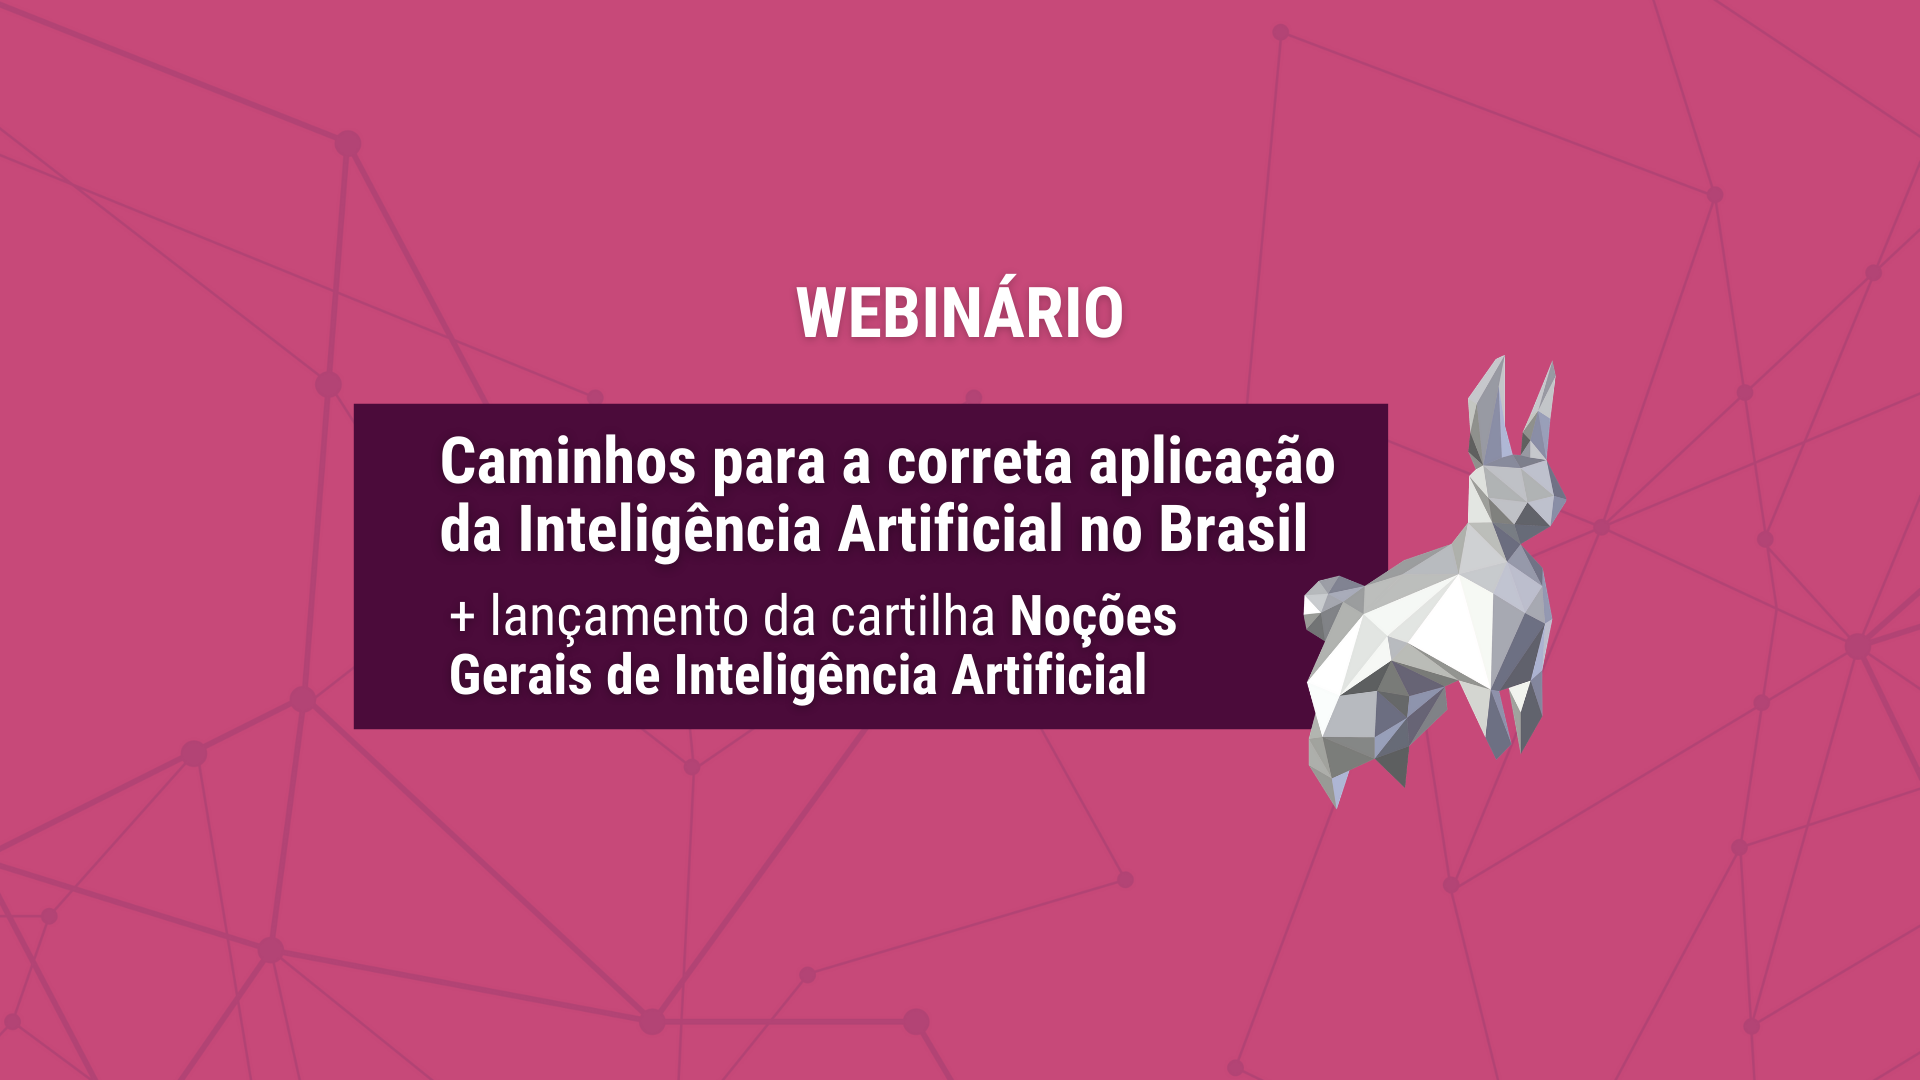 Relatório do Webinário “Caminhos para a Correta aplicação da Inteligência Artificial no Brasil”